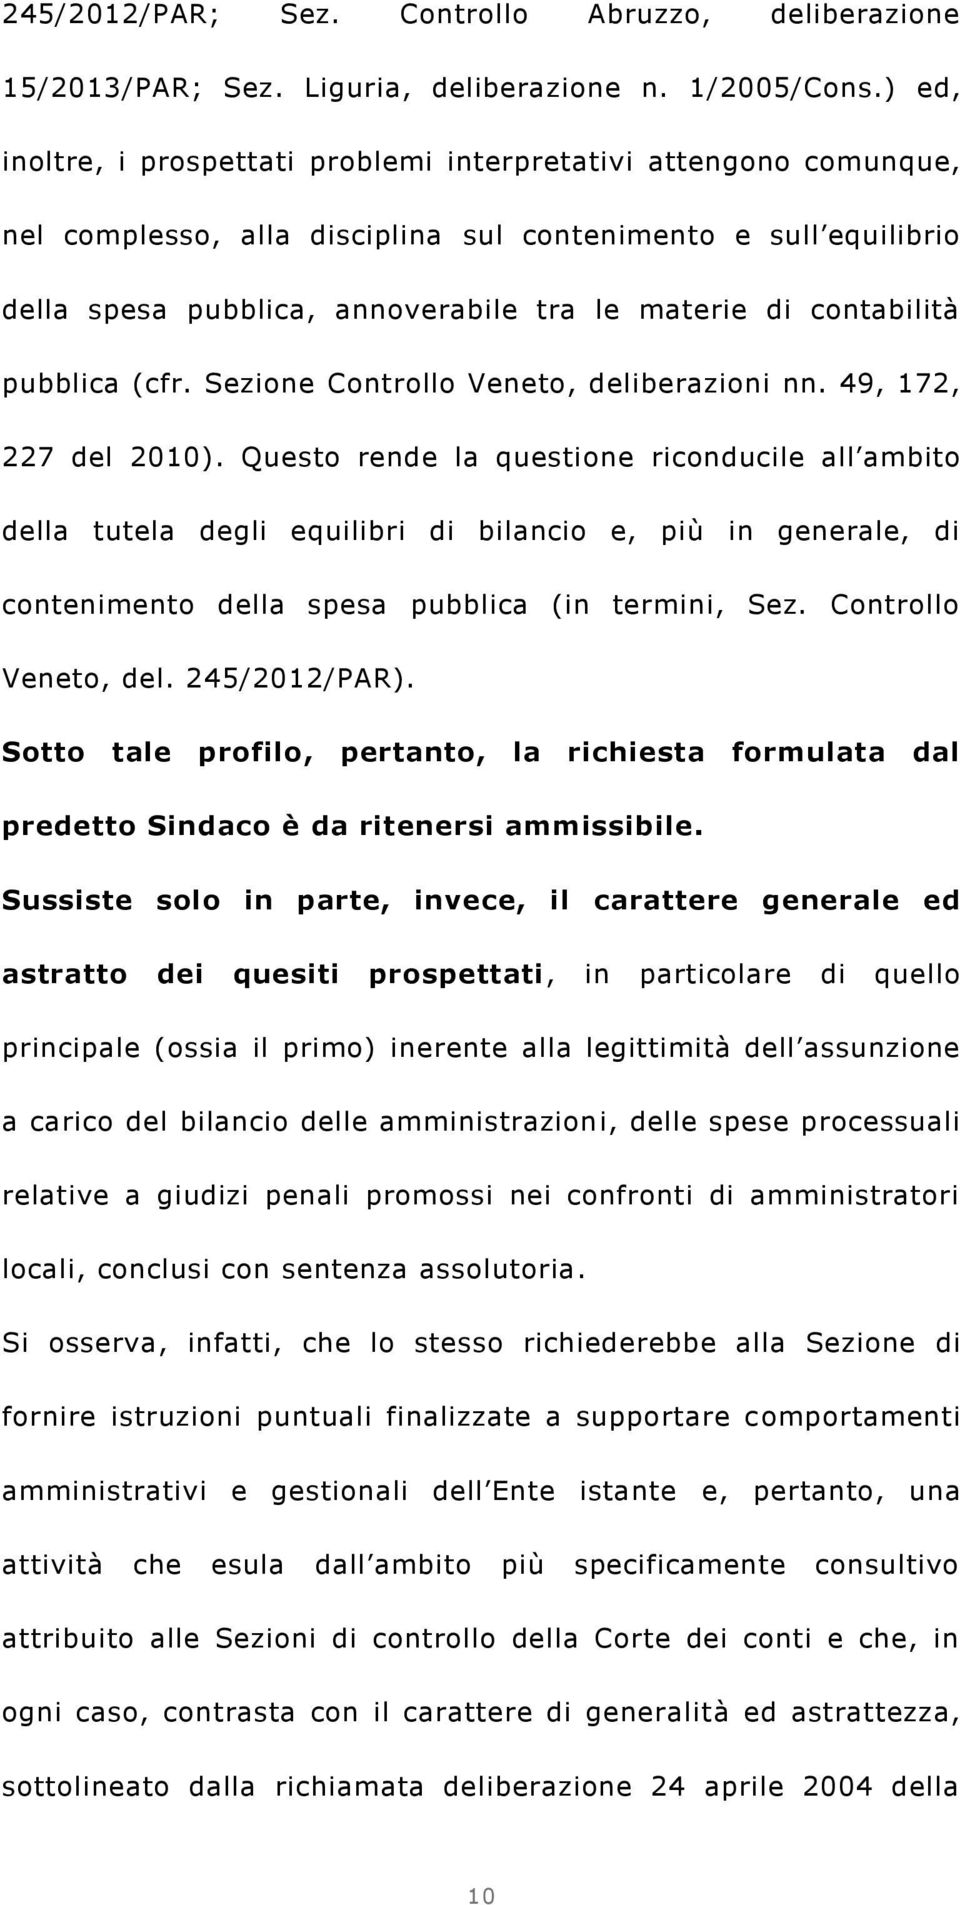 contabilità pubblica (cfr. Sezione Controllo Veneto, deliberazioni nn. 49, 172, 227 del 2010).